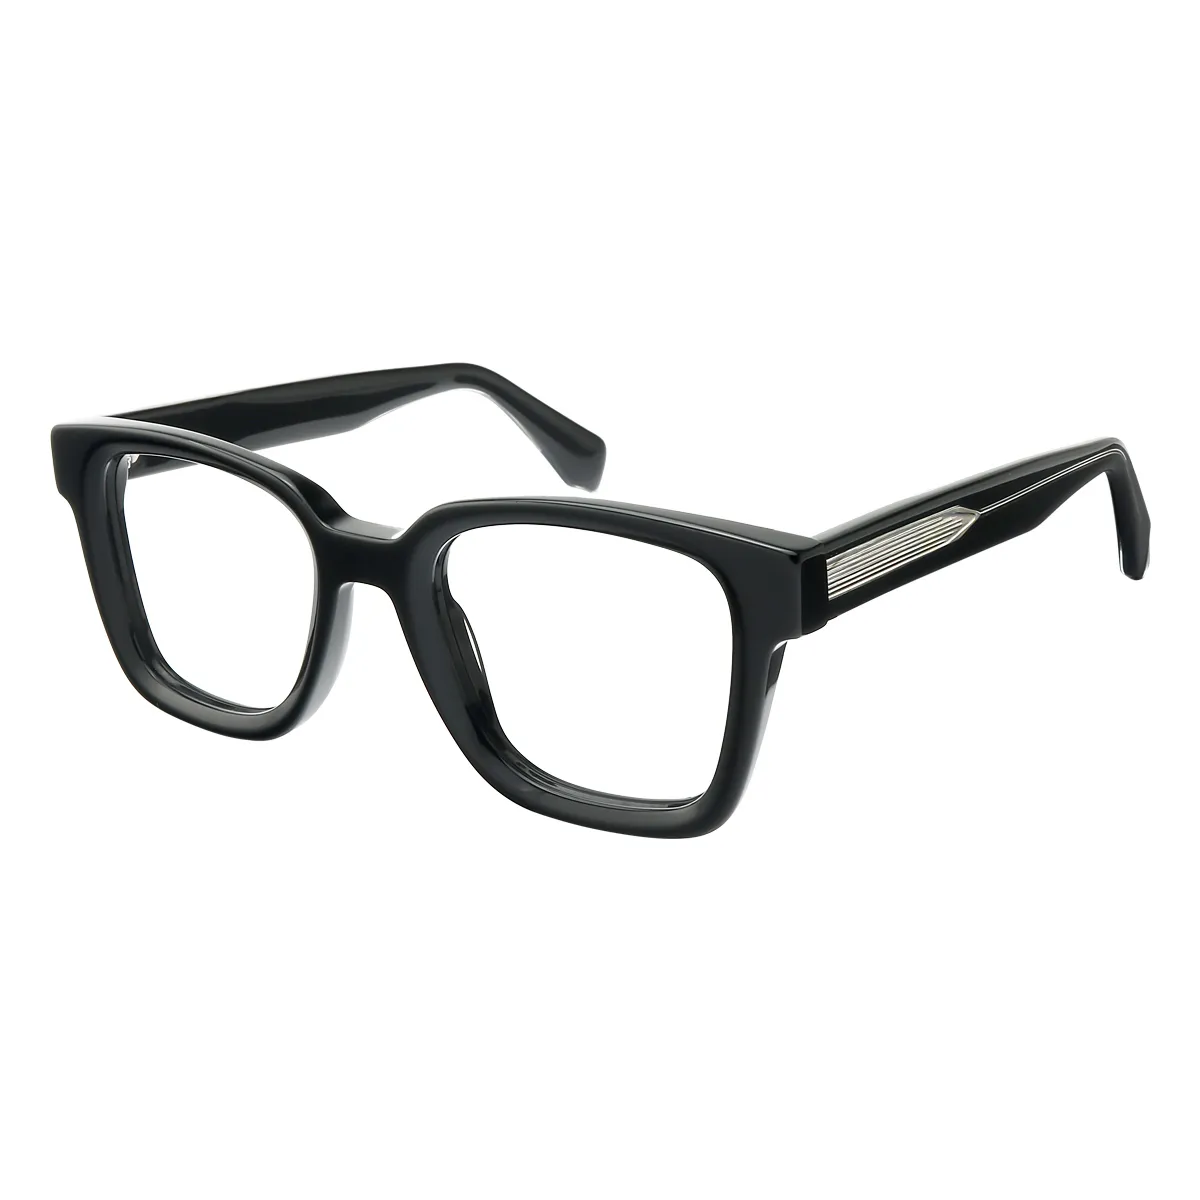 Vinyl - Square Black Glasses for Men & Women